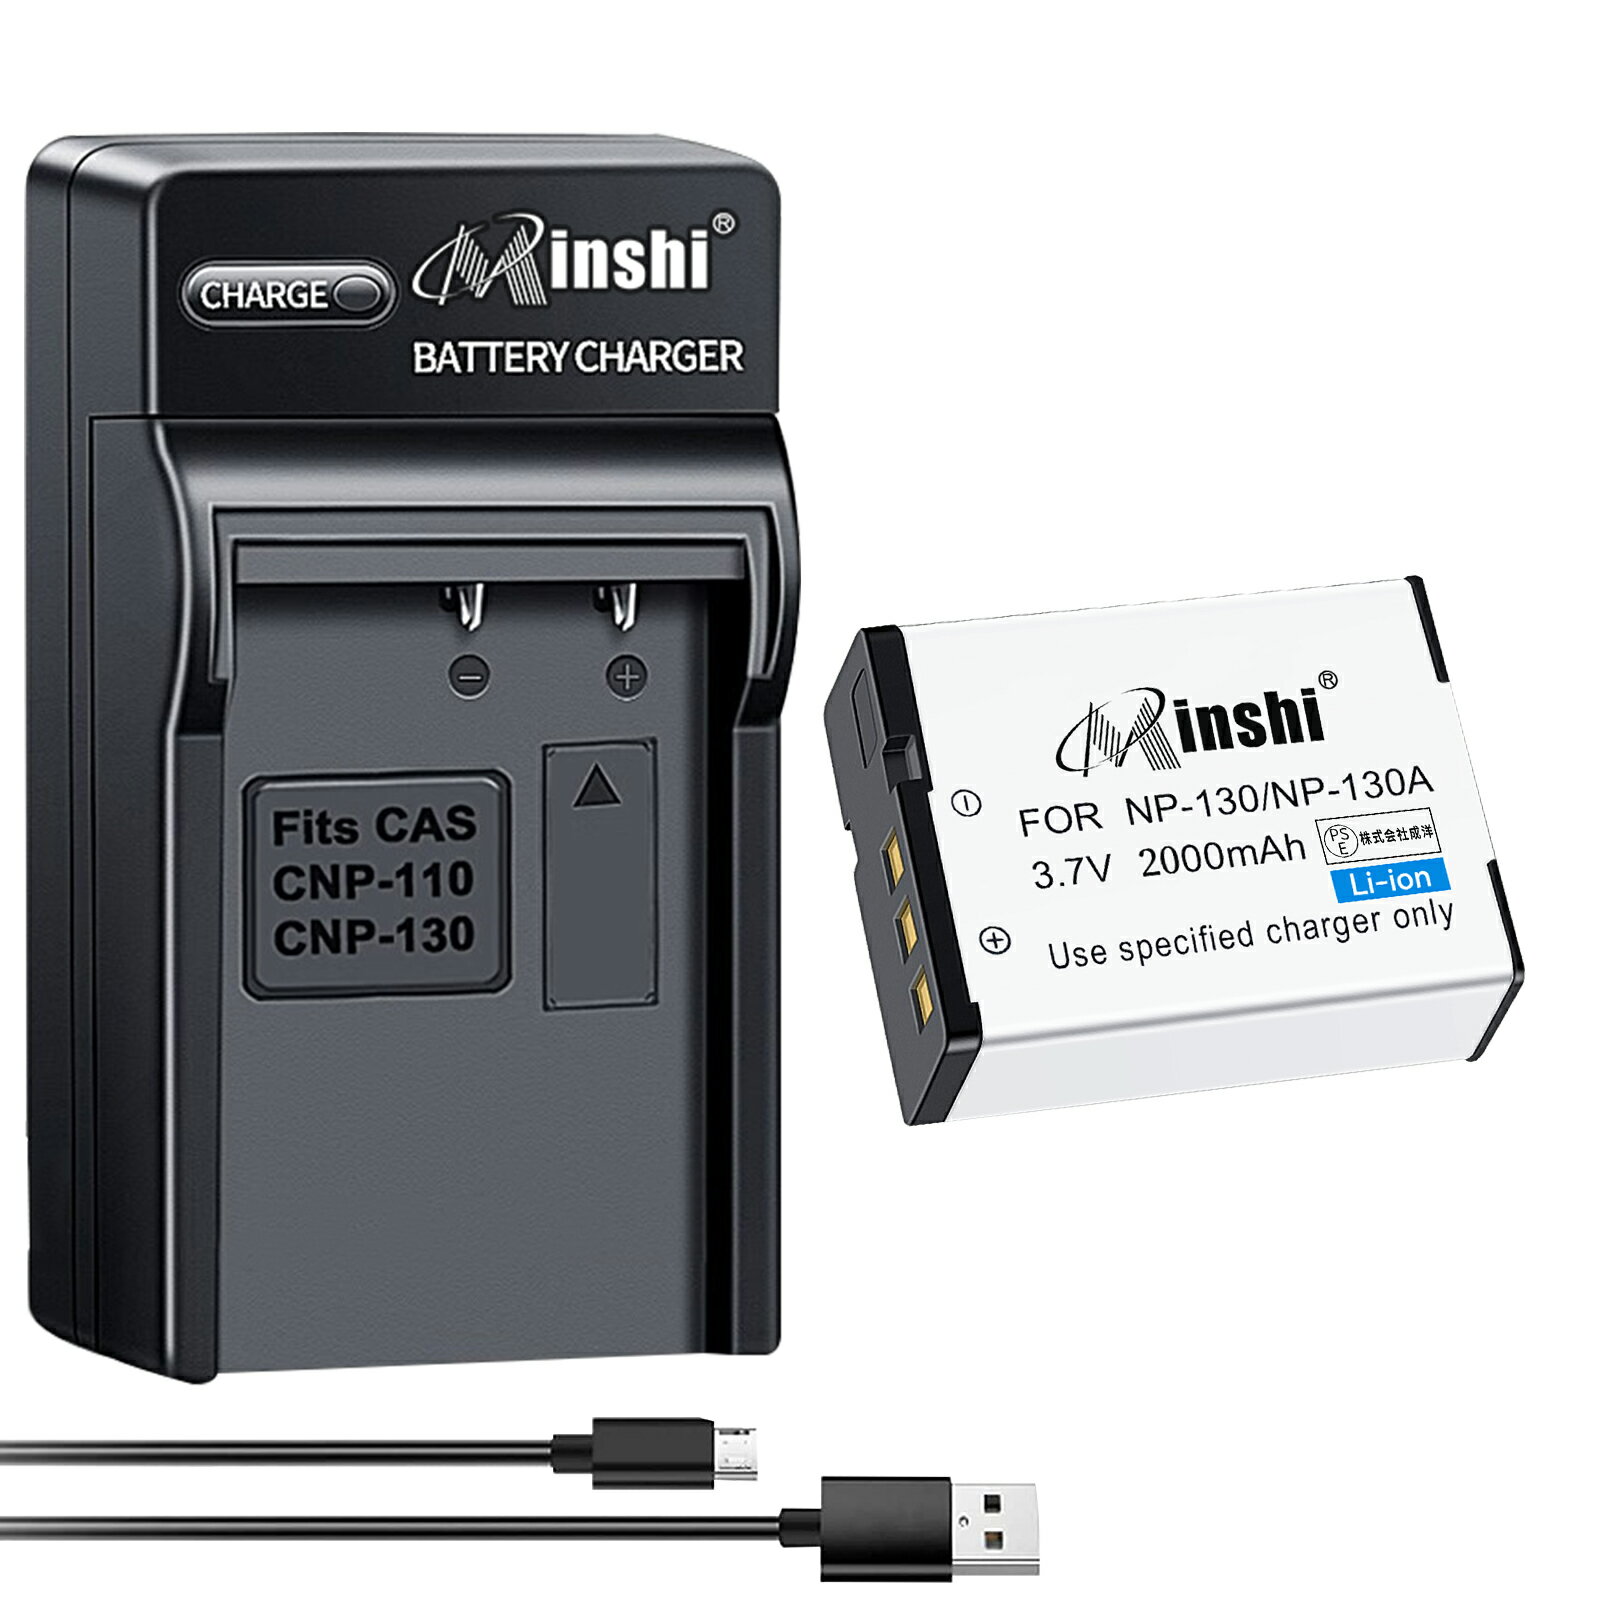 【USB充電器と電池1個】minshi 新品 Casio EX-ZR3000 互換バッテリー 2000mAh 高品質交換用リチャージブル カメラバッテリー リチウムイオンバッテリー デジタルカメラ デジカメ 充電池 PSE認証 1年間保証 予備バッテリー